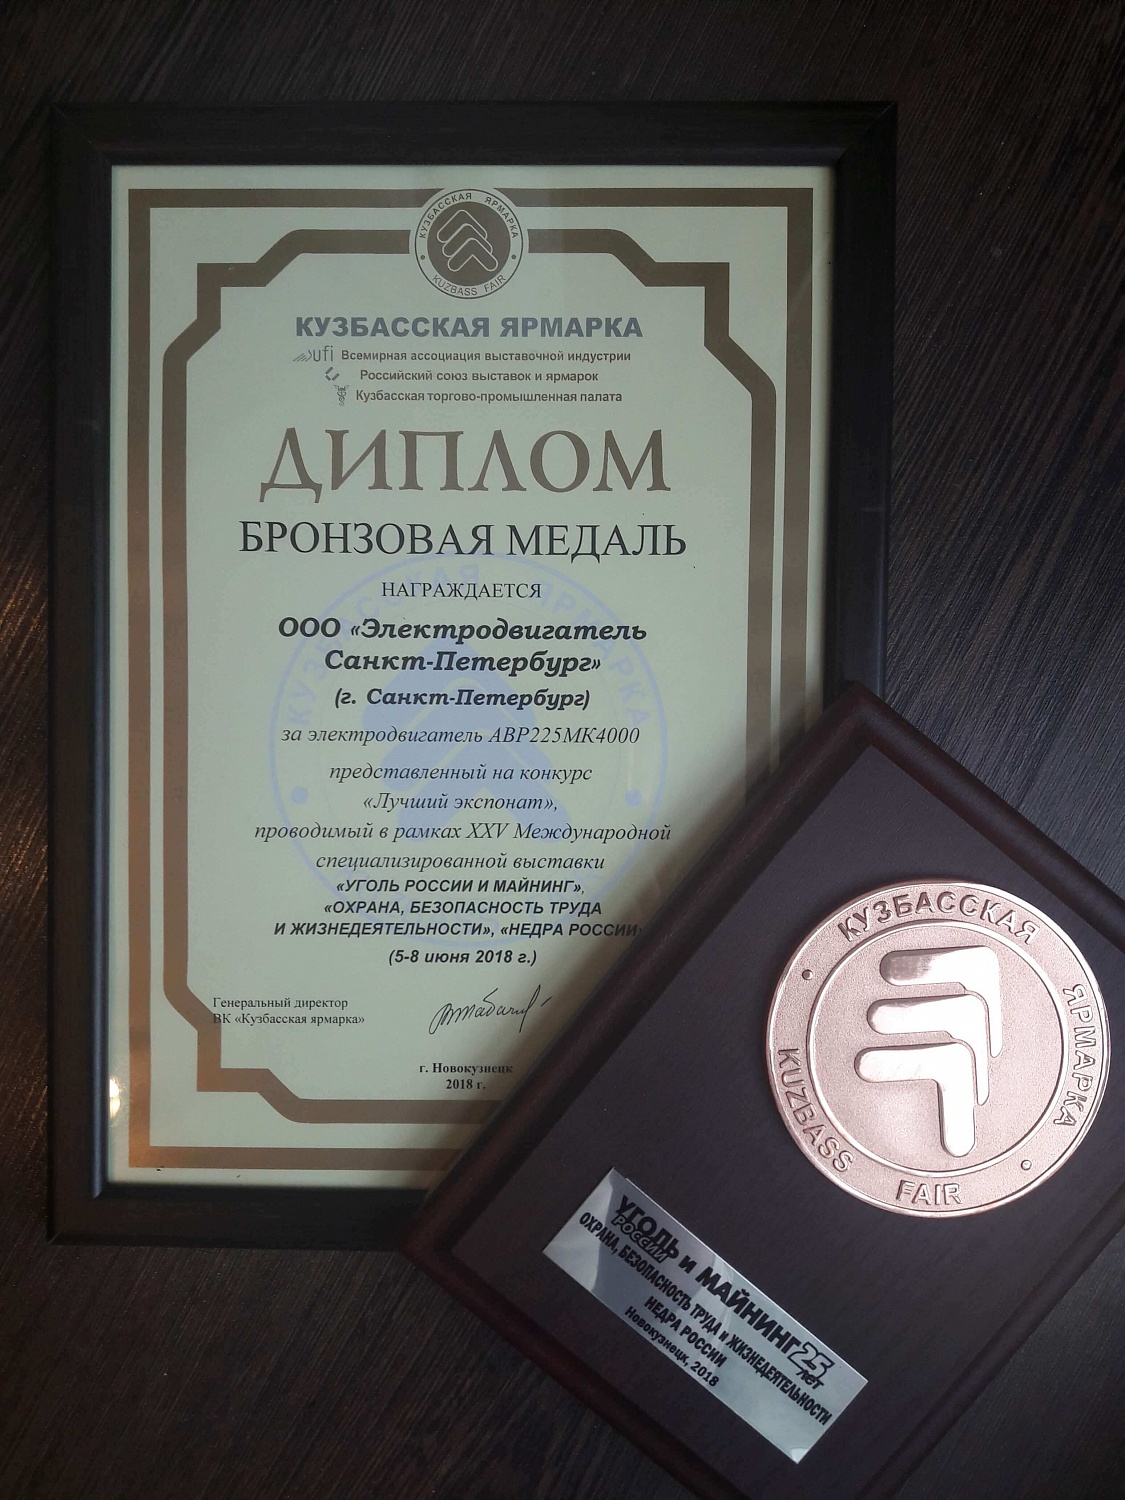 Электродвигатель Санкт-Петербург получил две награды на выставке Уголь России и майнинг 2018.